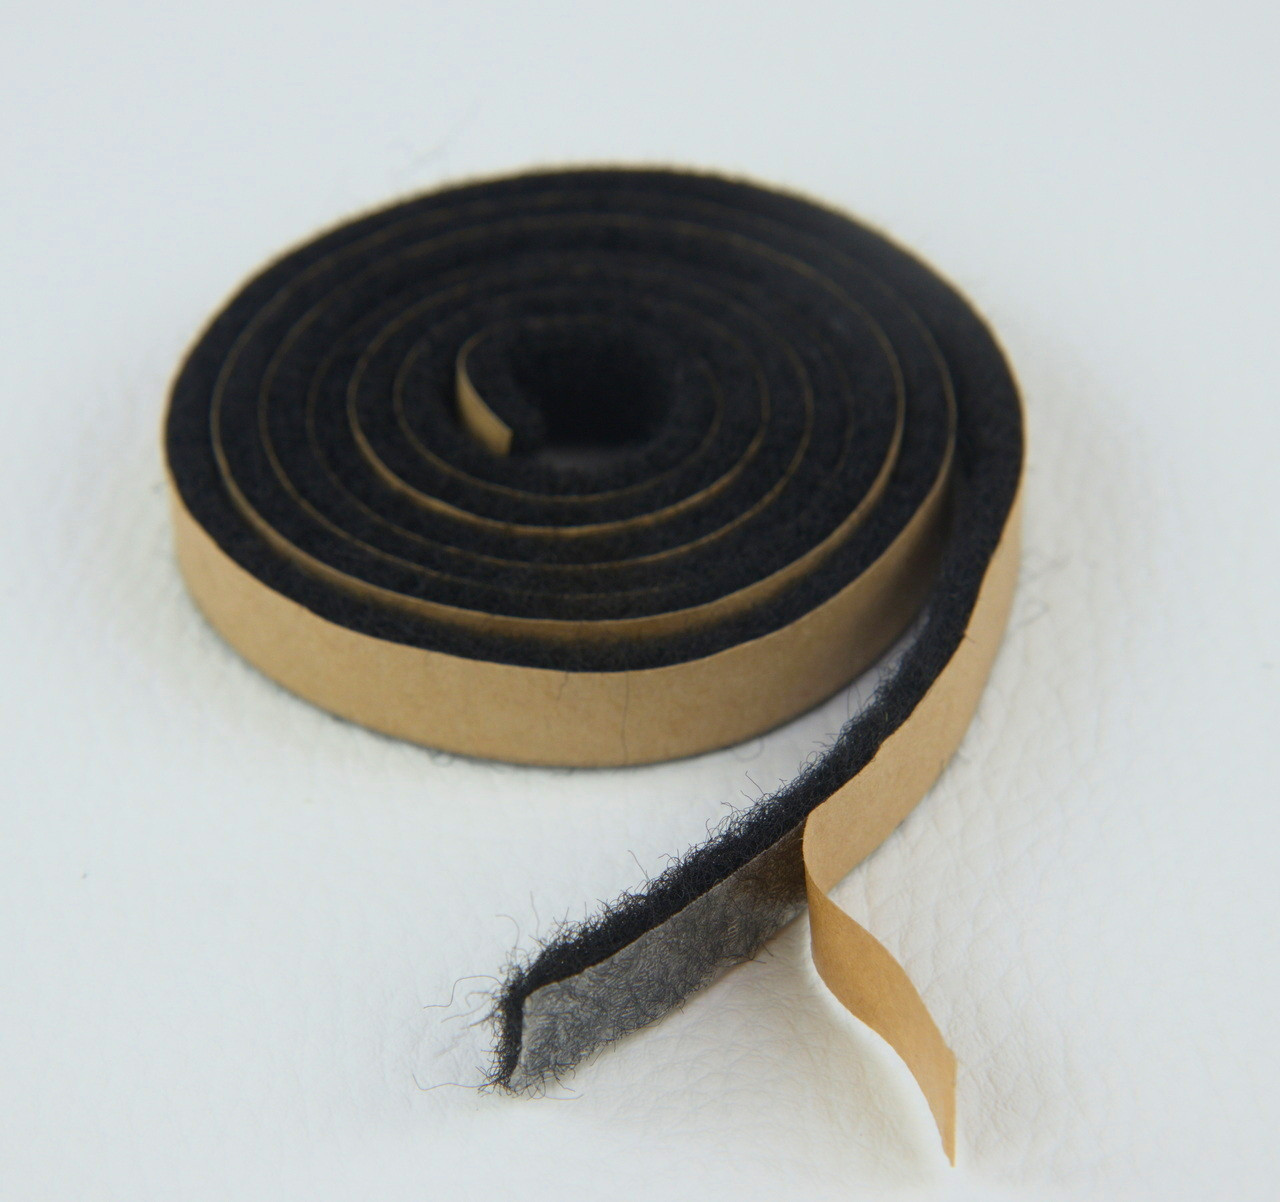 Антискрип Лента С2 черная, толщина 2.2 мм, прокладочный материал детальная фотка